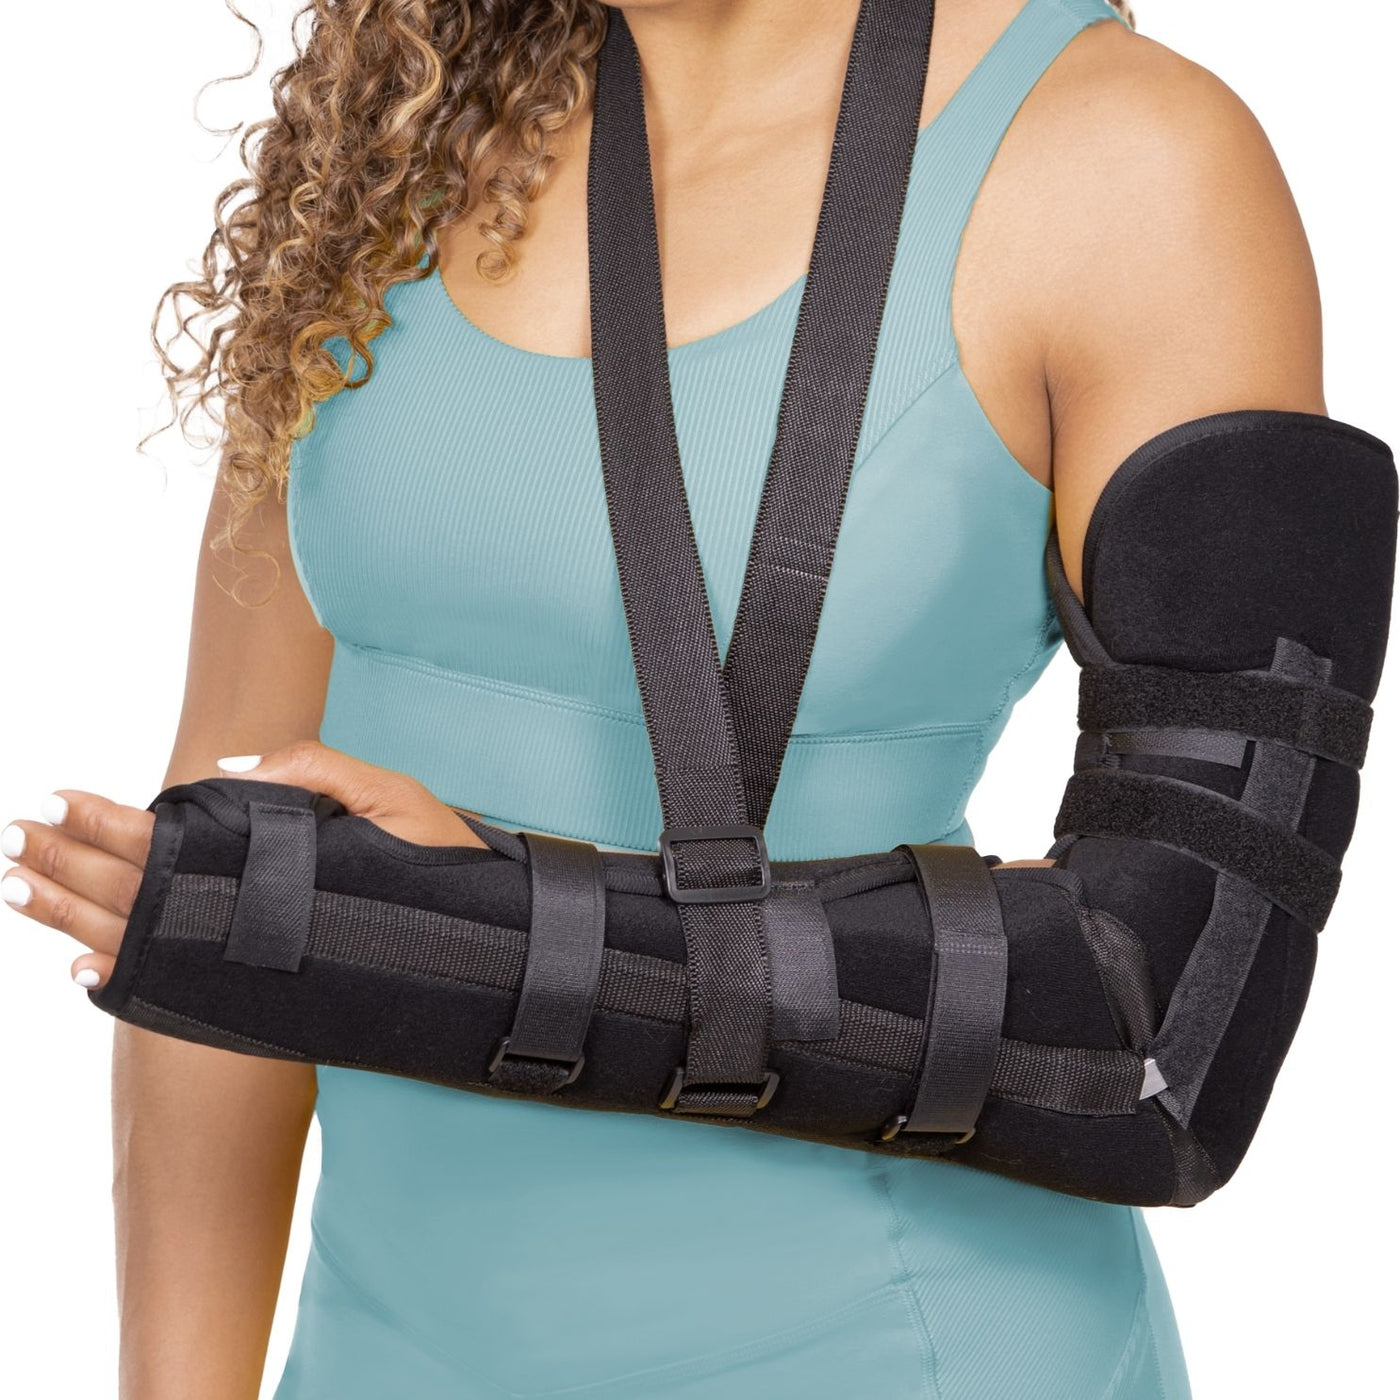 The BraceAbility posterior long long arm splint has three aluminum splints to immobilize elbows